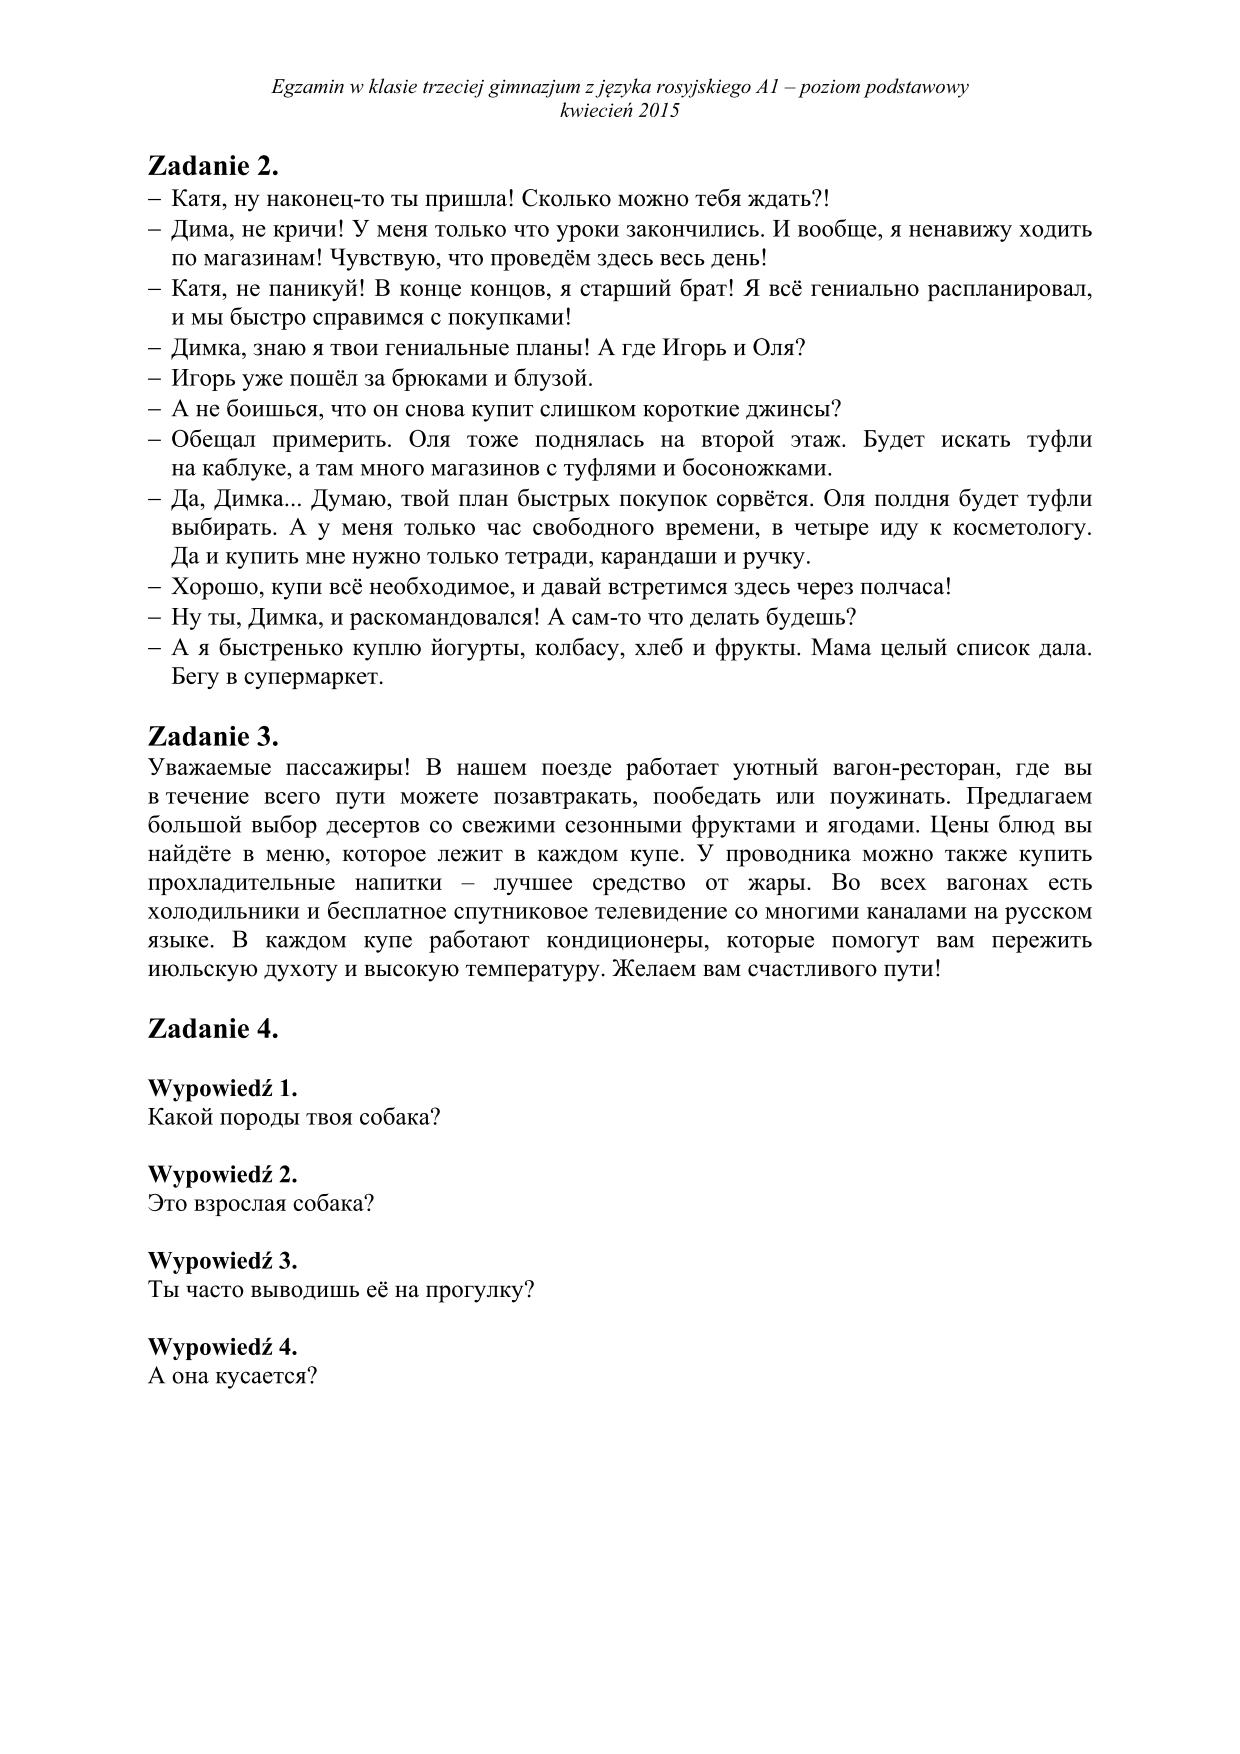 transkrypcja-rosyjski-poziom-podstawowy-egzamin-gimnazjalny-2015-2